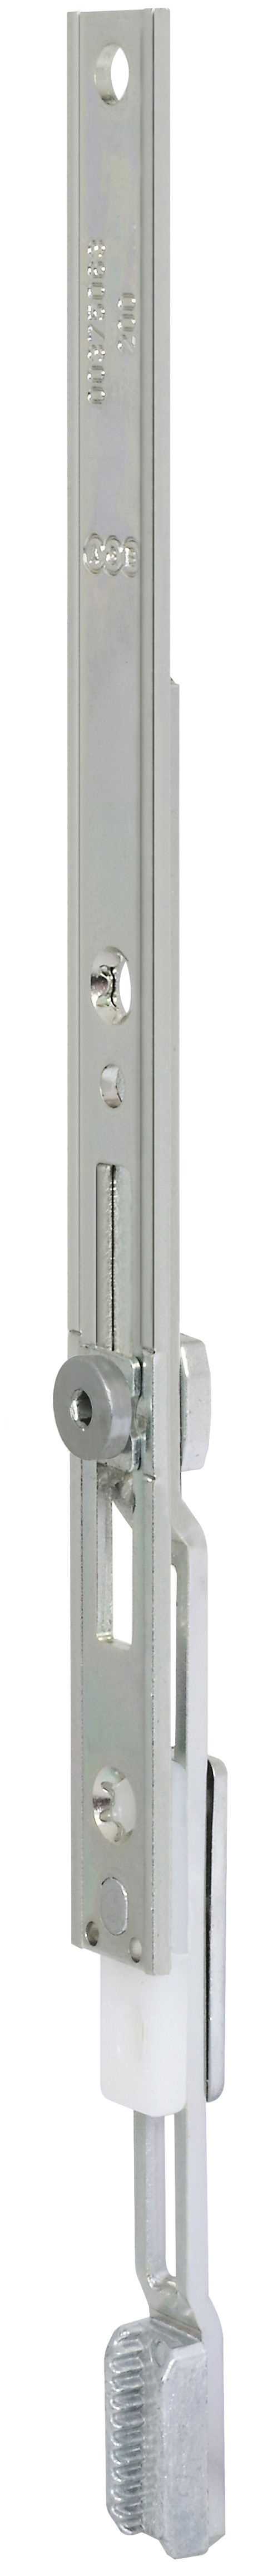 AGB -  Prolunga ARTECH per chiusure supplementari con magnete piatto - gr / dim 200